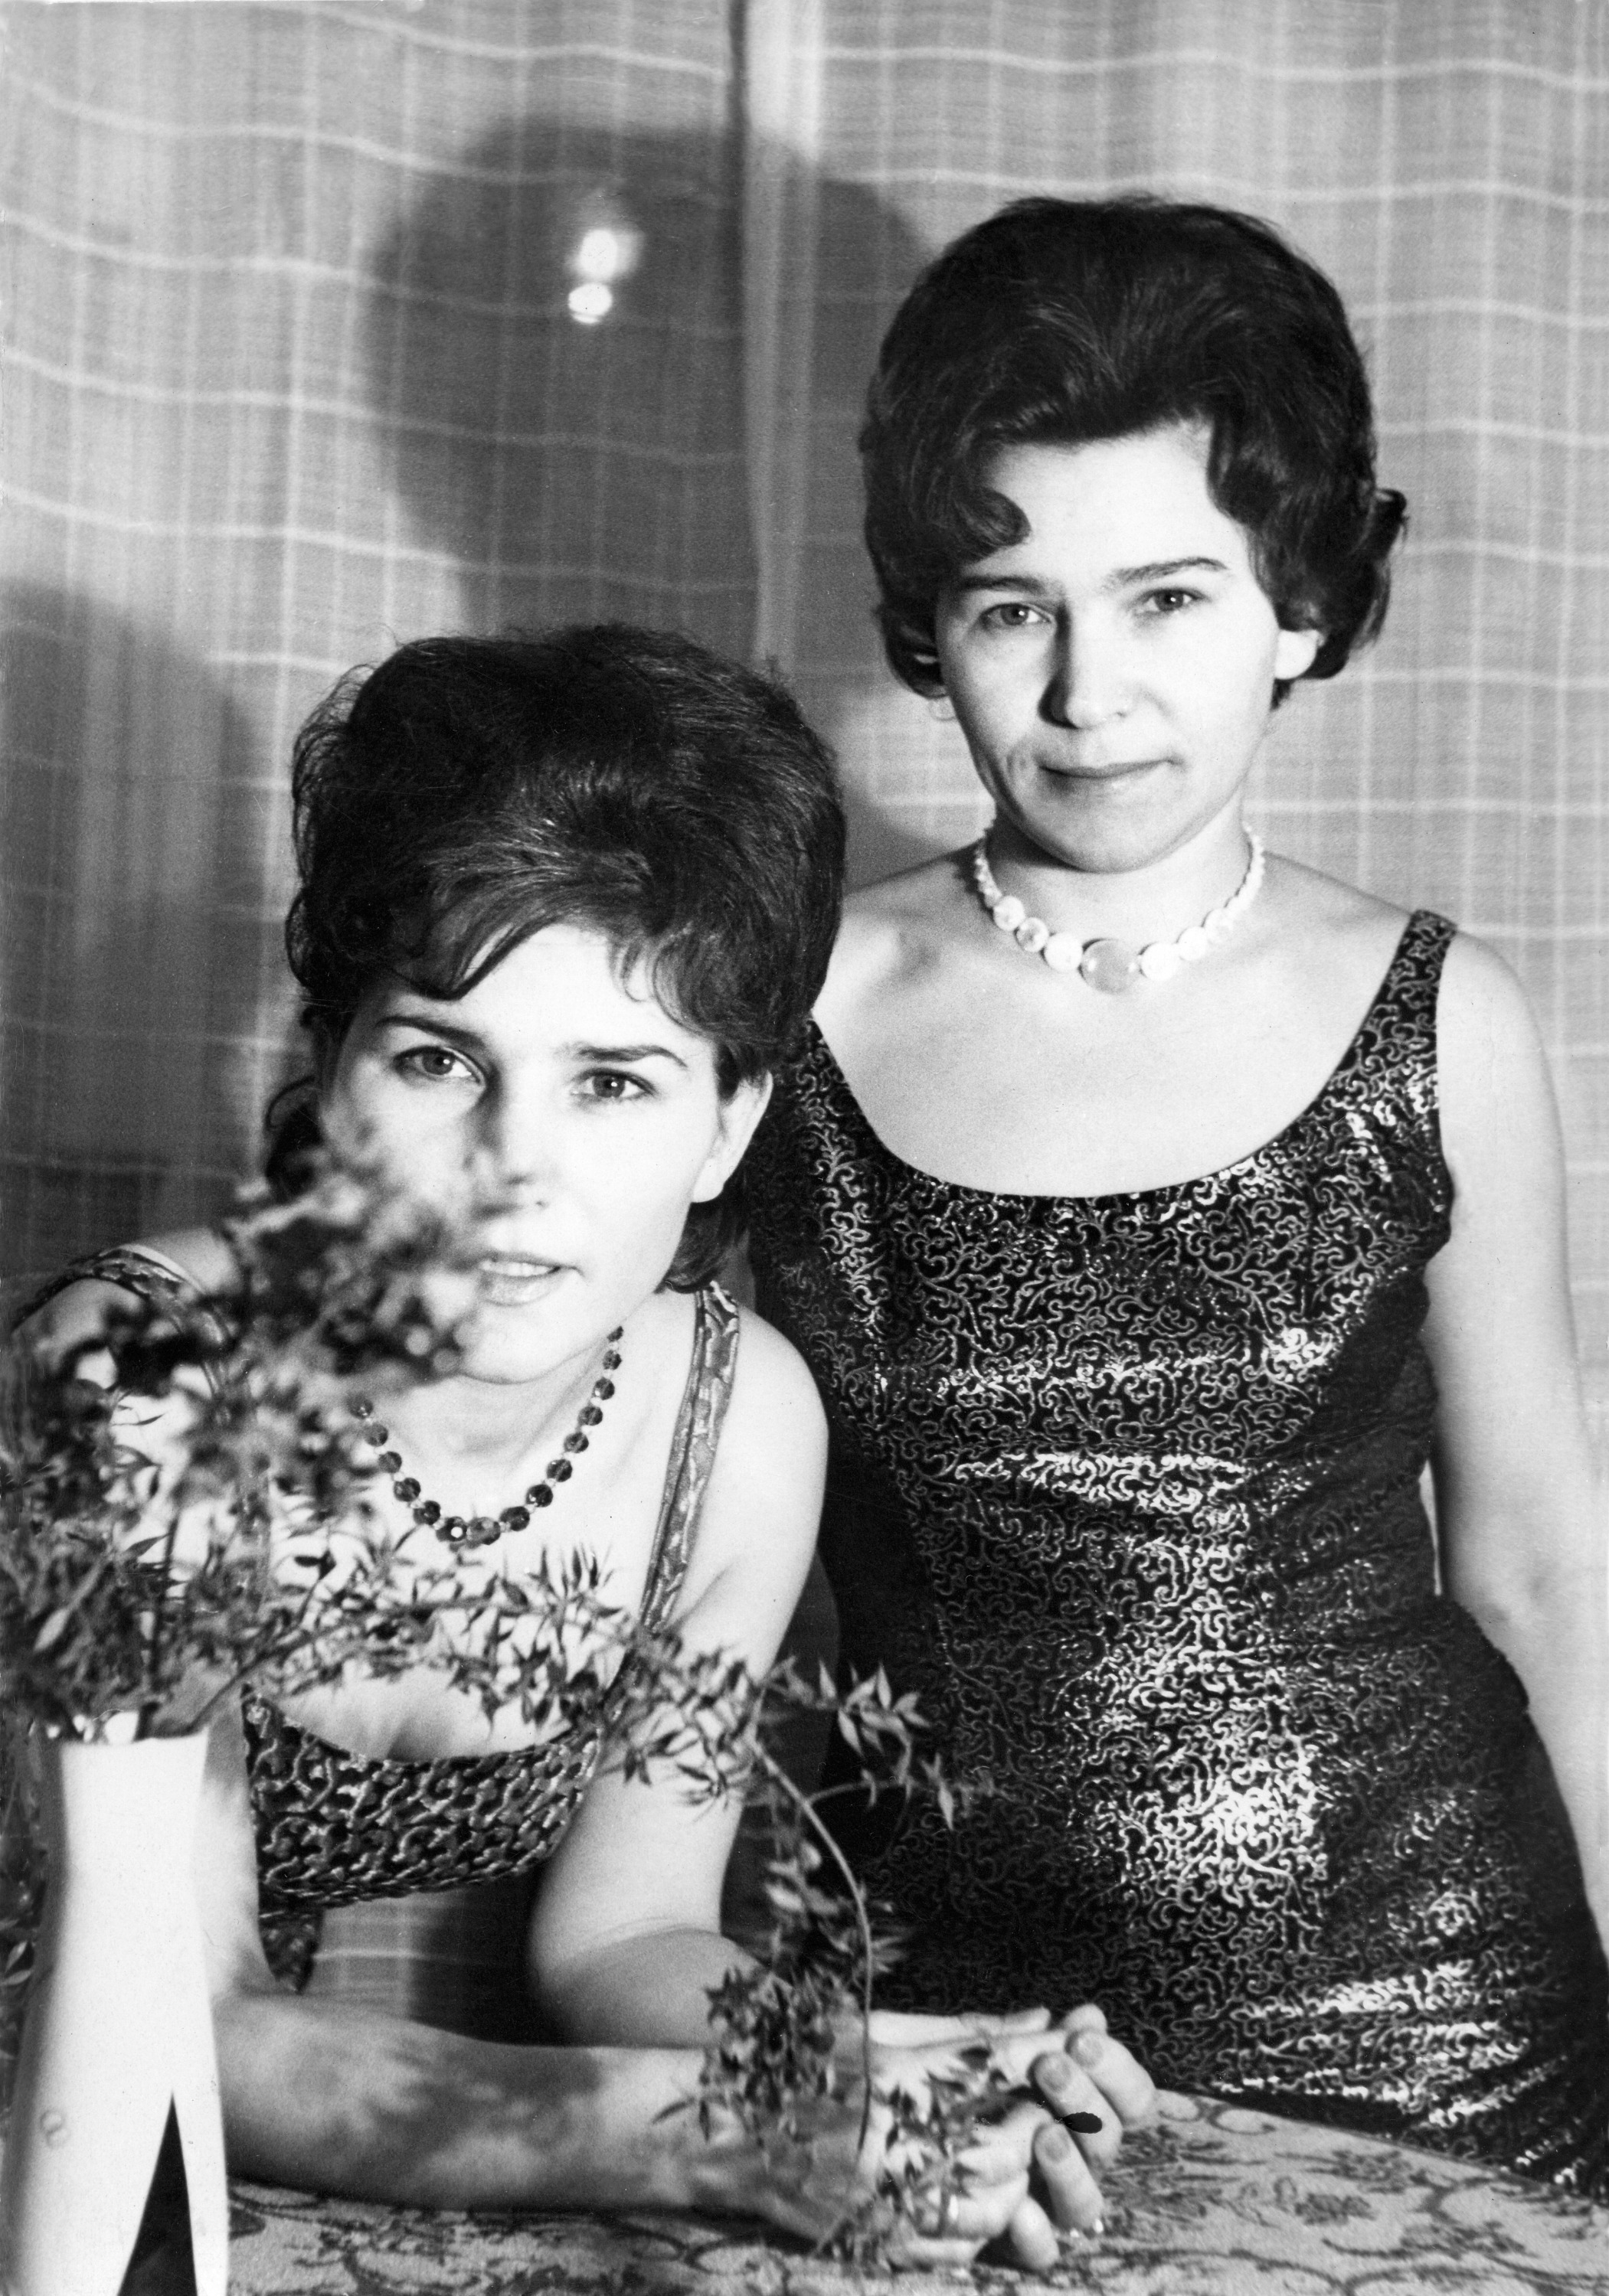 Младшая сестра Роза (слева) помогала Наине разнообразить гардероб вещами из ГДР. <br>Фото 1967 г.